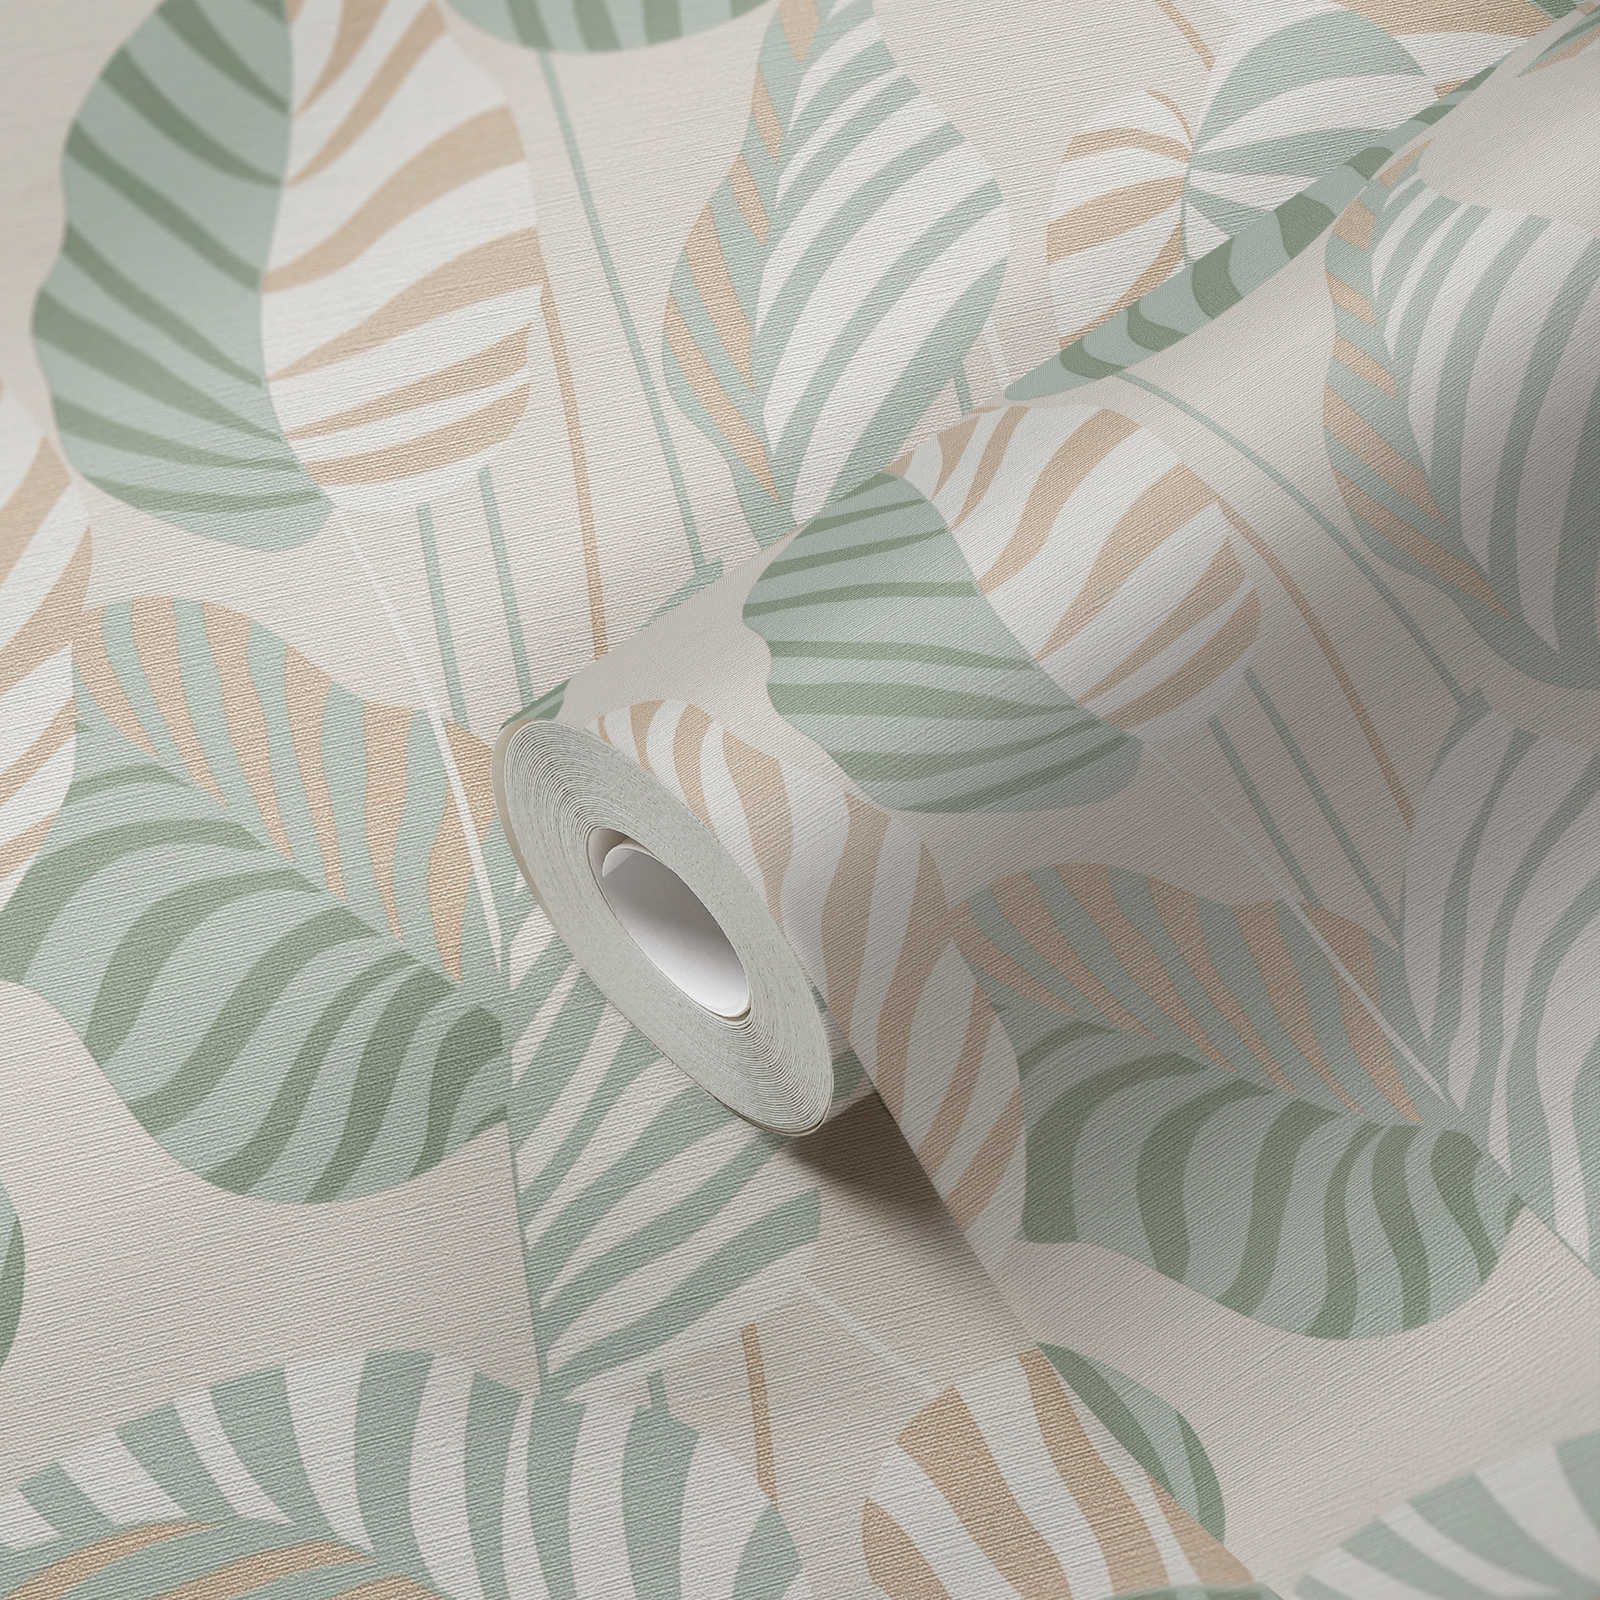             Papier peint intissé style naturel avec feuilles de palmier légèrement brillantes - crème, vert, or
        